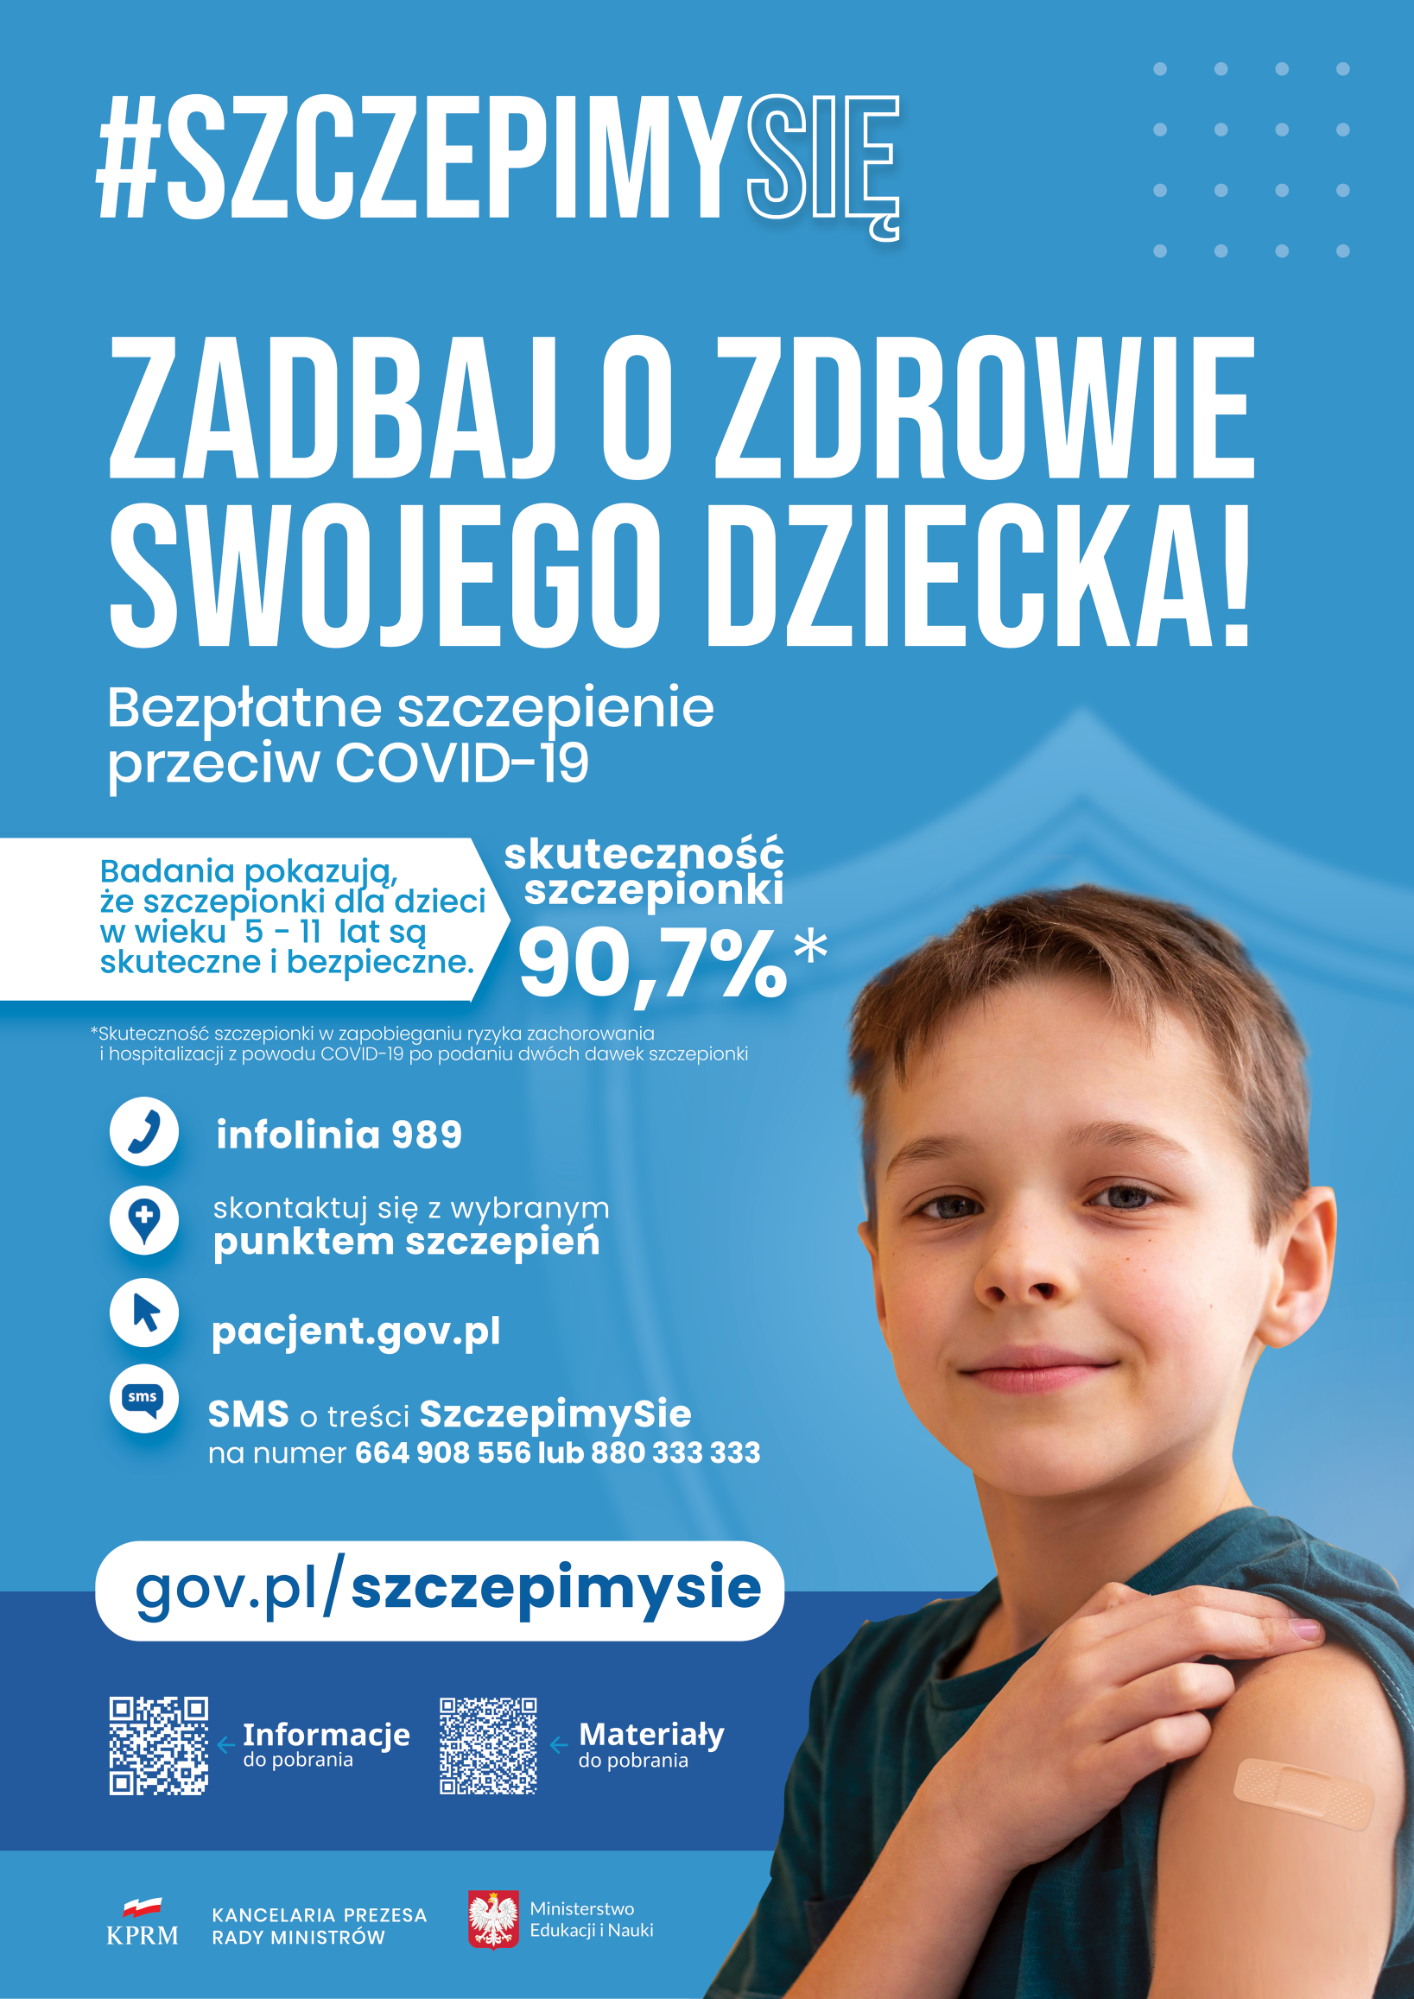 Na plakacie znajdują się informacje dotyczące szczepień oraz kody qr do skanowania, aby pobrać informacje o szczepieniach COVID-19.